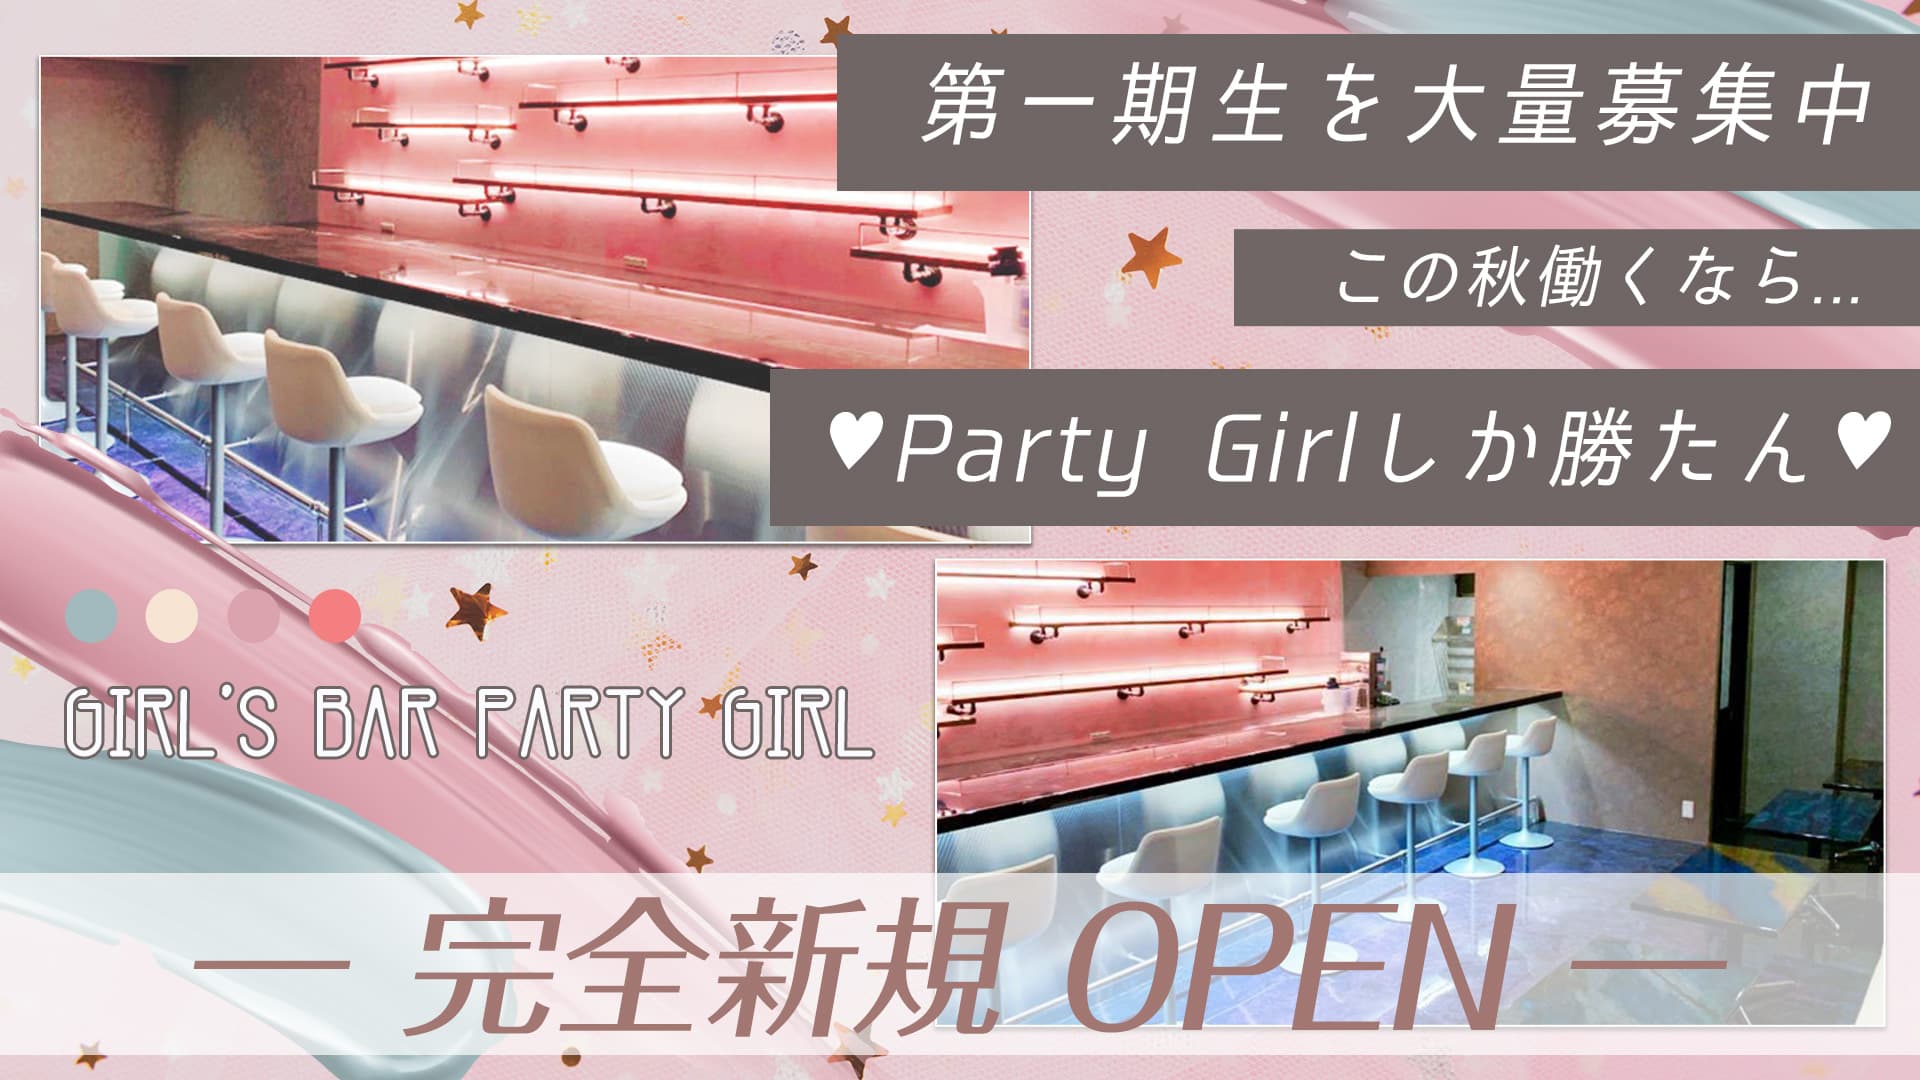 Girl's Bar Party Girl(パーティーガール)【公式求人・体入情報】 川越ガールズバー TOP画像